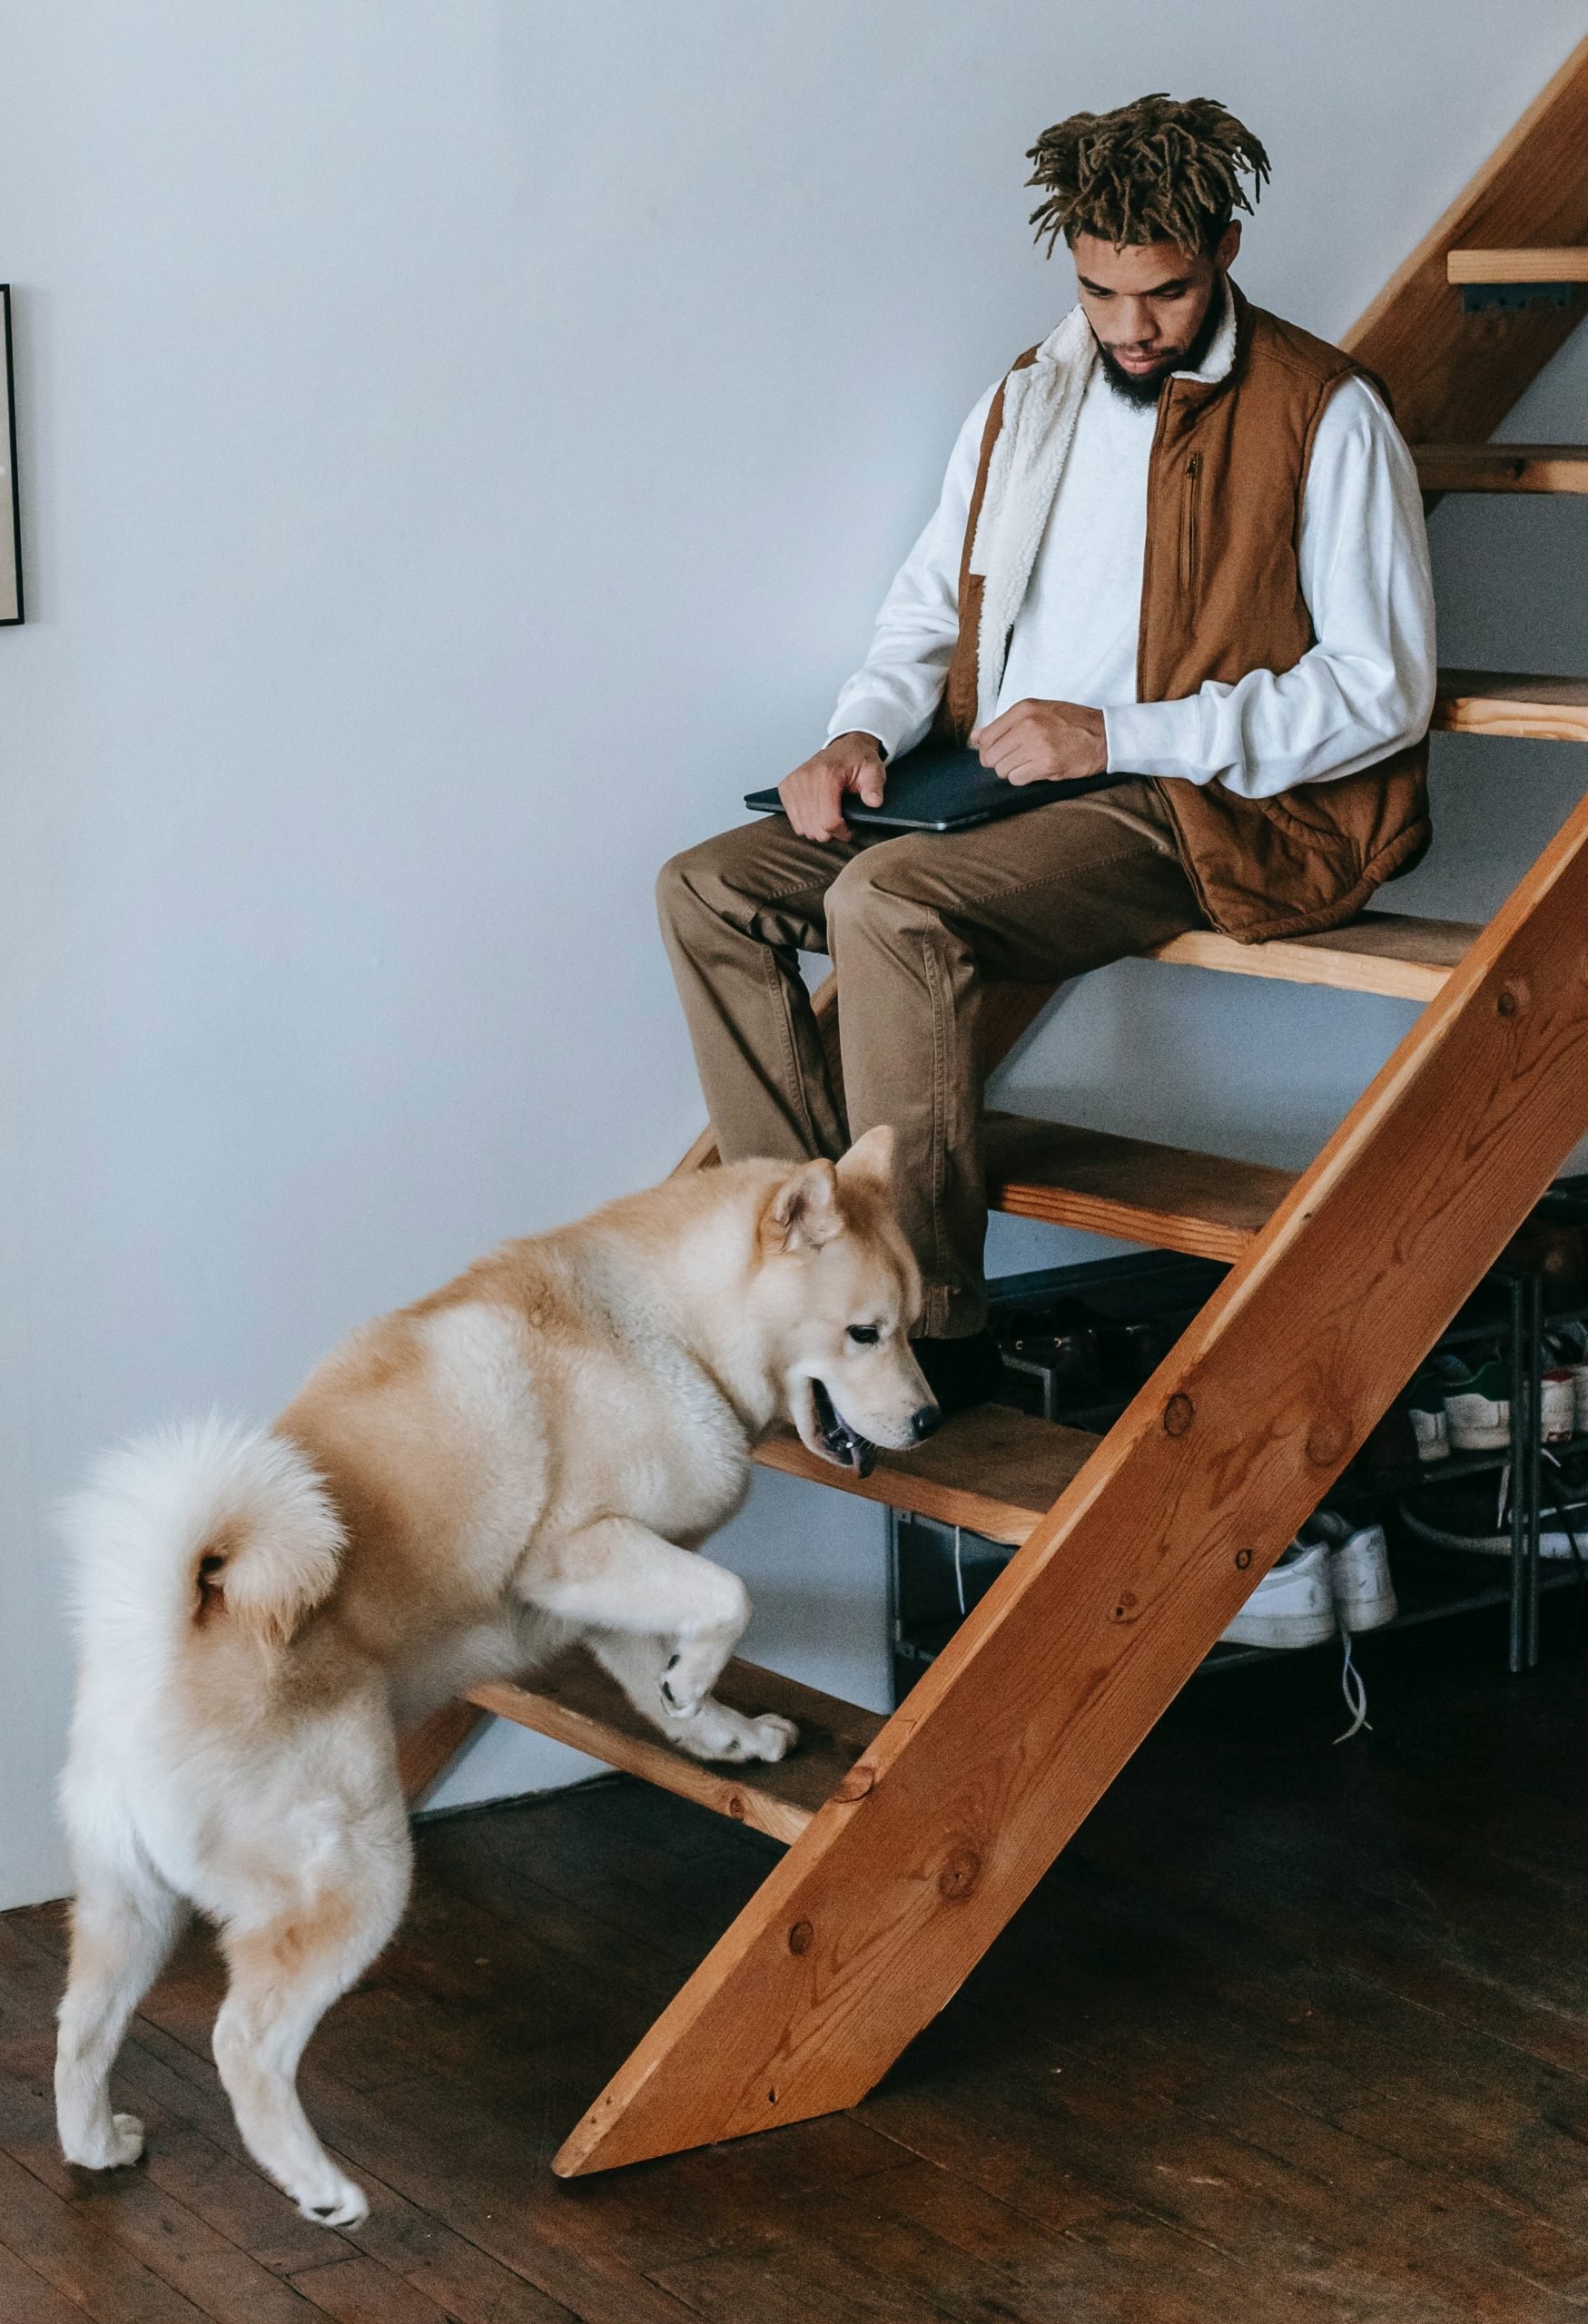 Escaleras para perros: Subir y bajar en forma segura